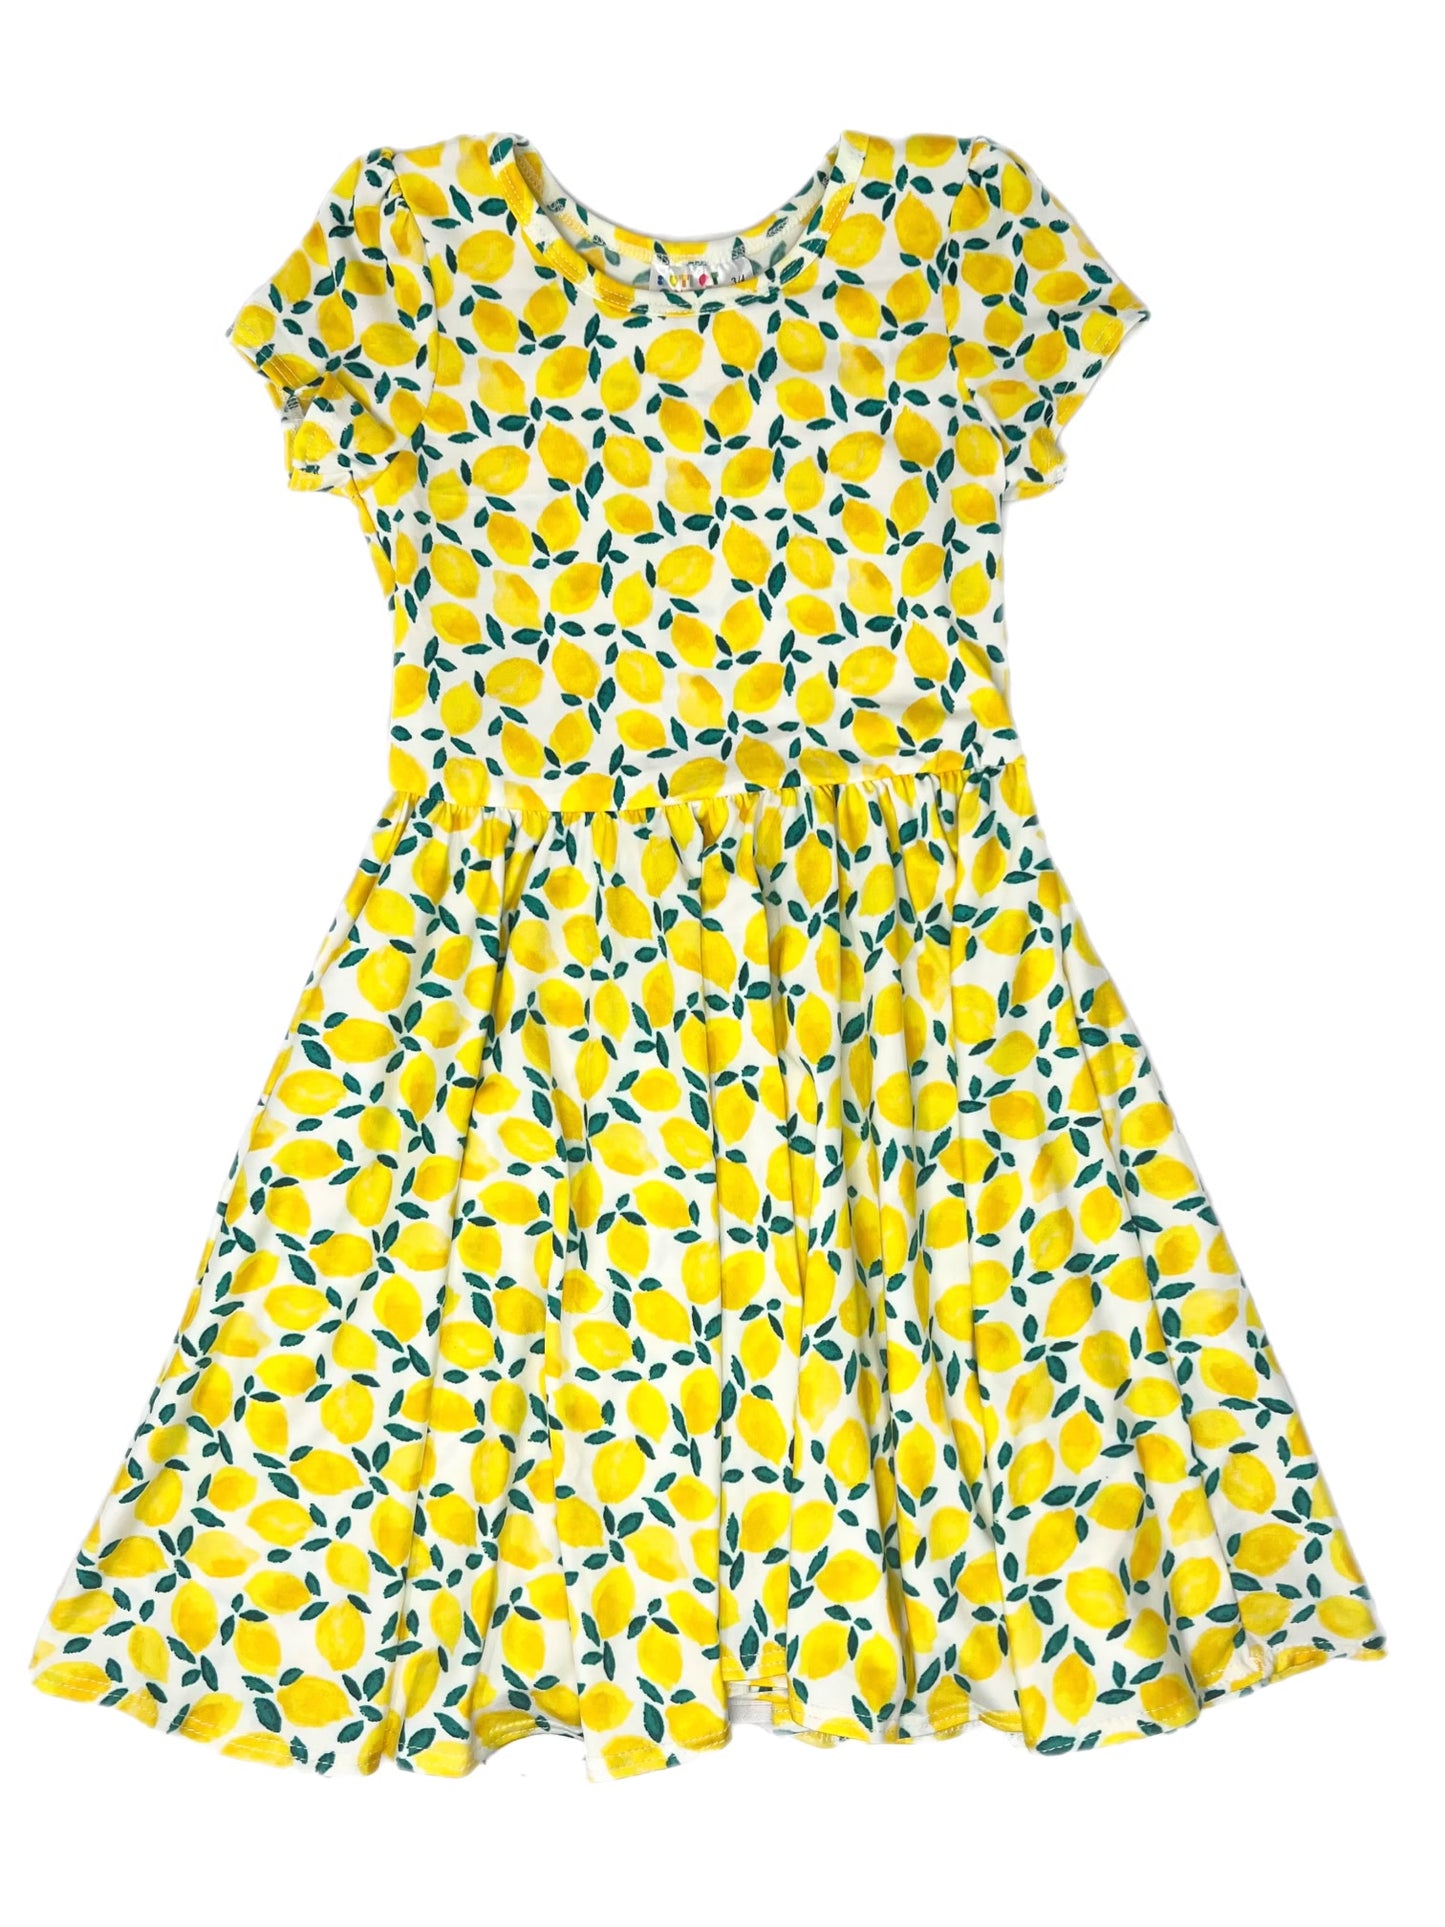 Lemons Cap Dress